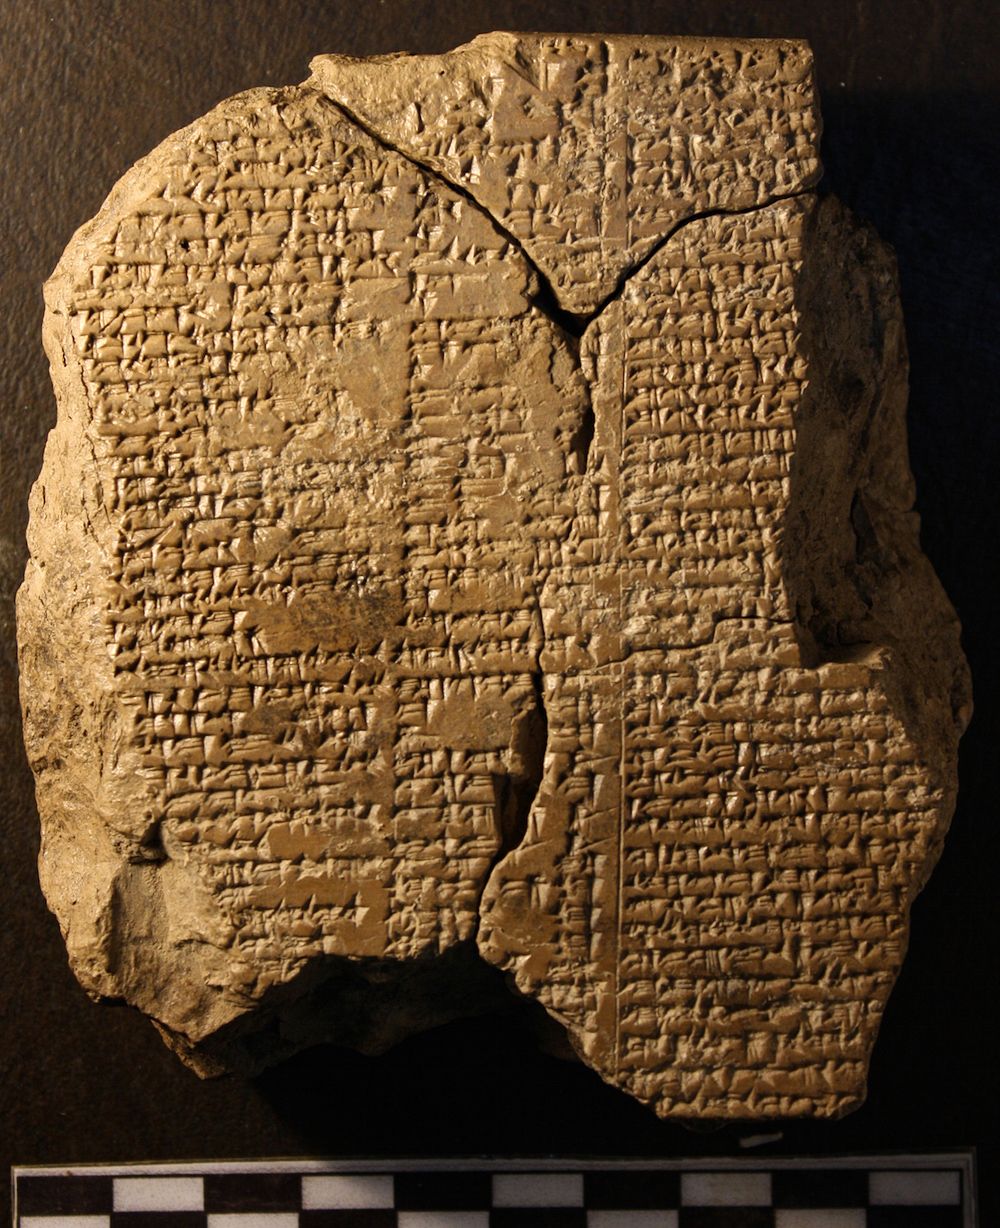 Tavoletta contenente parte dell'Epopea di Gilgamesh